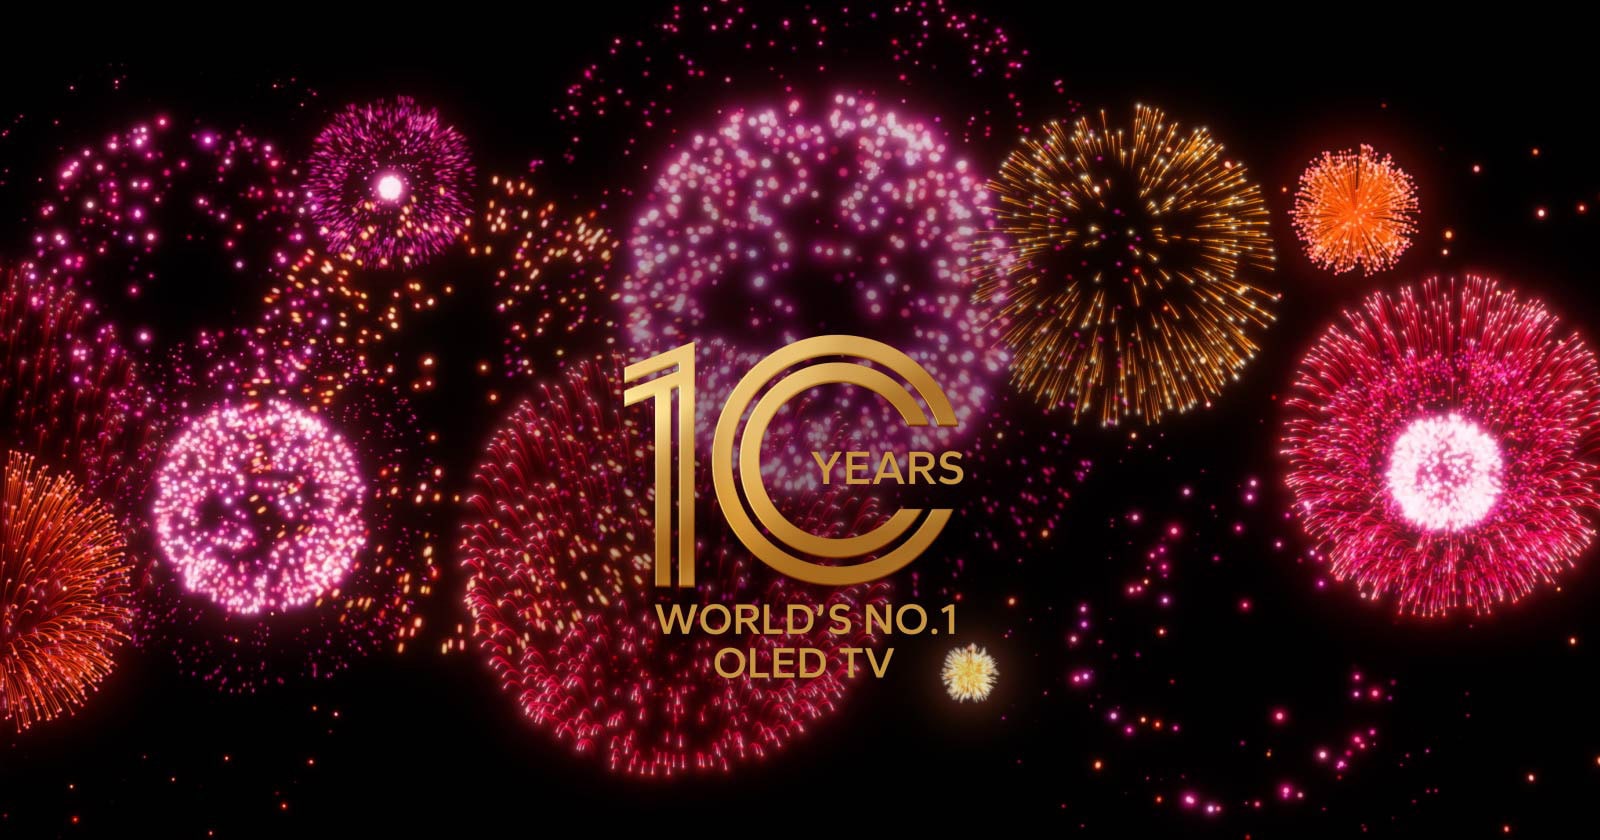 Film przedstawia emblemat „10 Year World's No.1 OLED TV” stopniowo pojawiający się na czarnym tle w towarzystwie fioletowych, różowych i pomarańczowych fajerwerków.